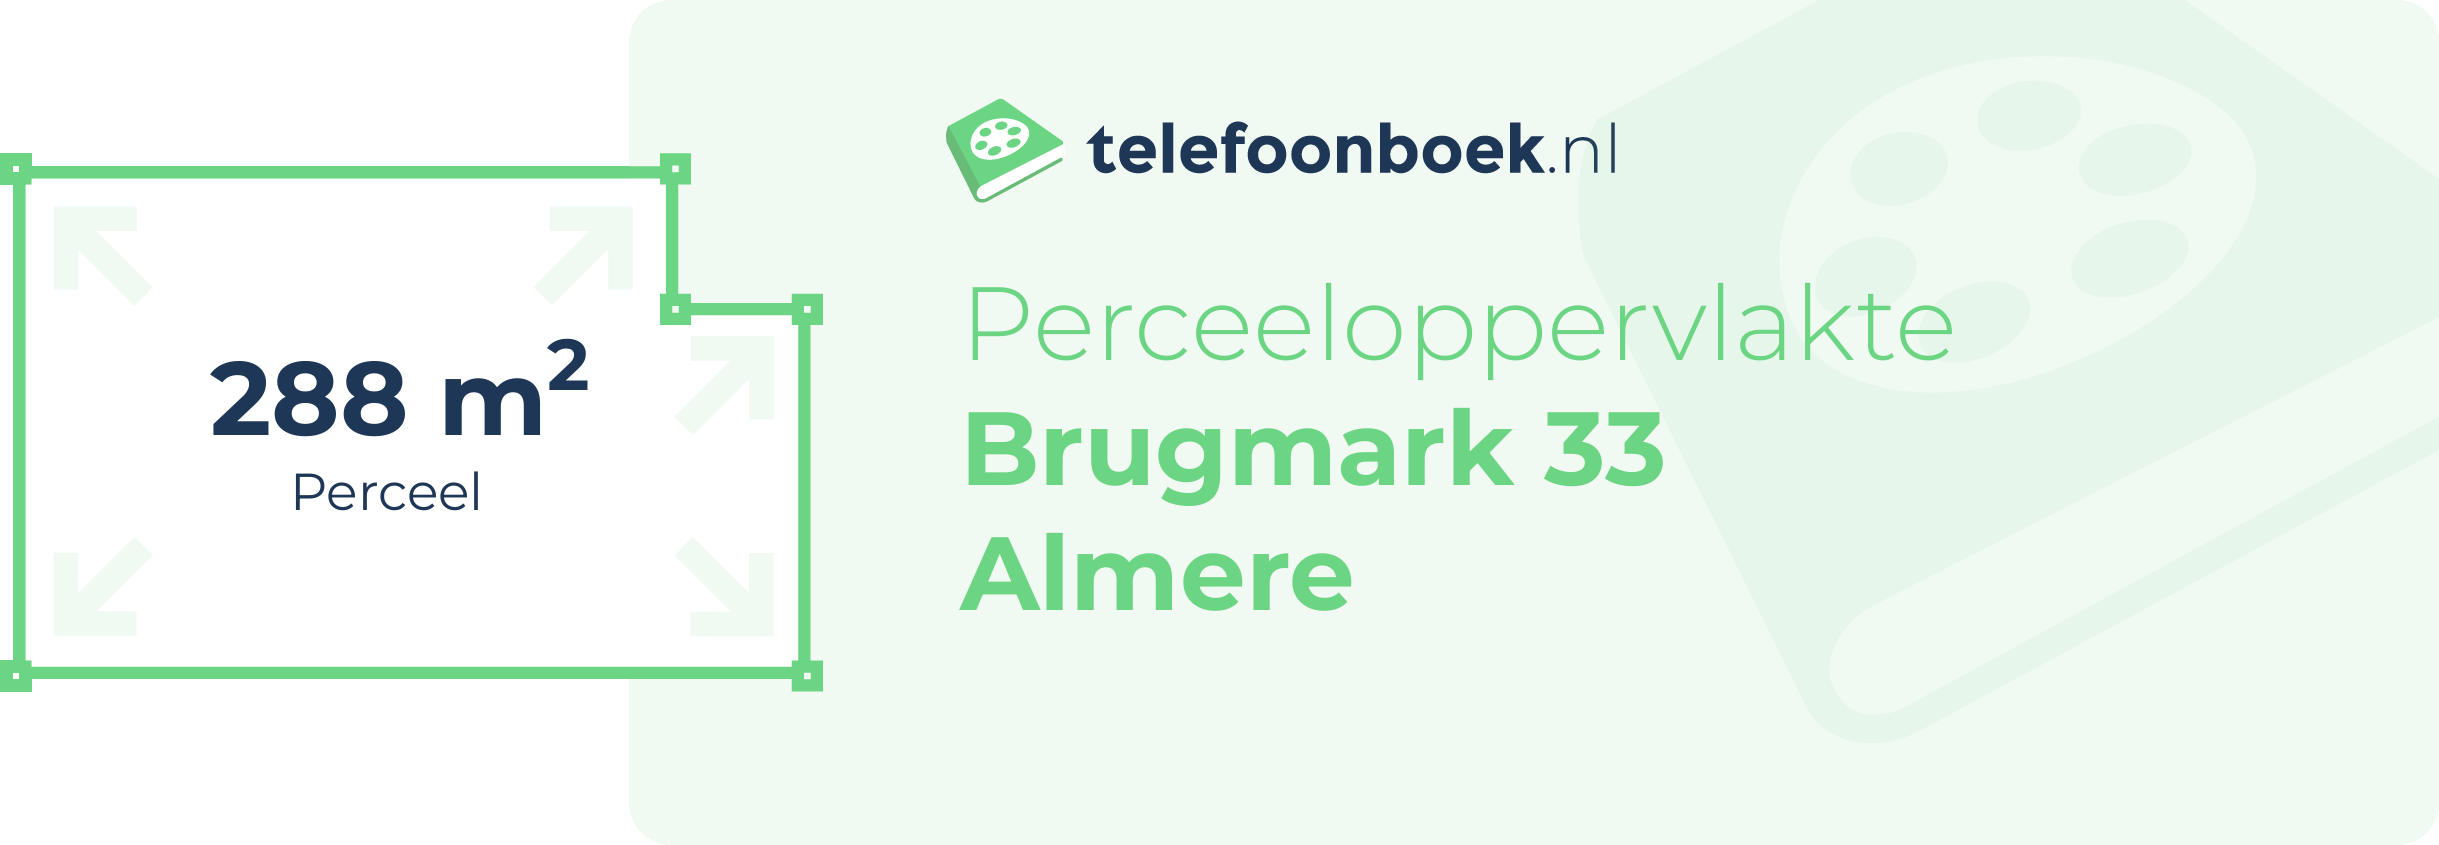 Perceeloppervlakte Brugmark 33 Almere